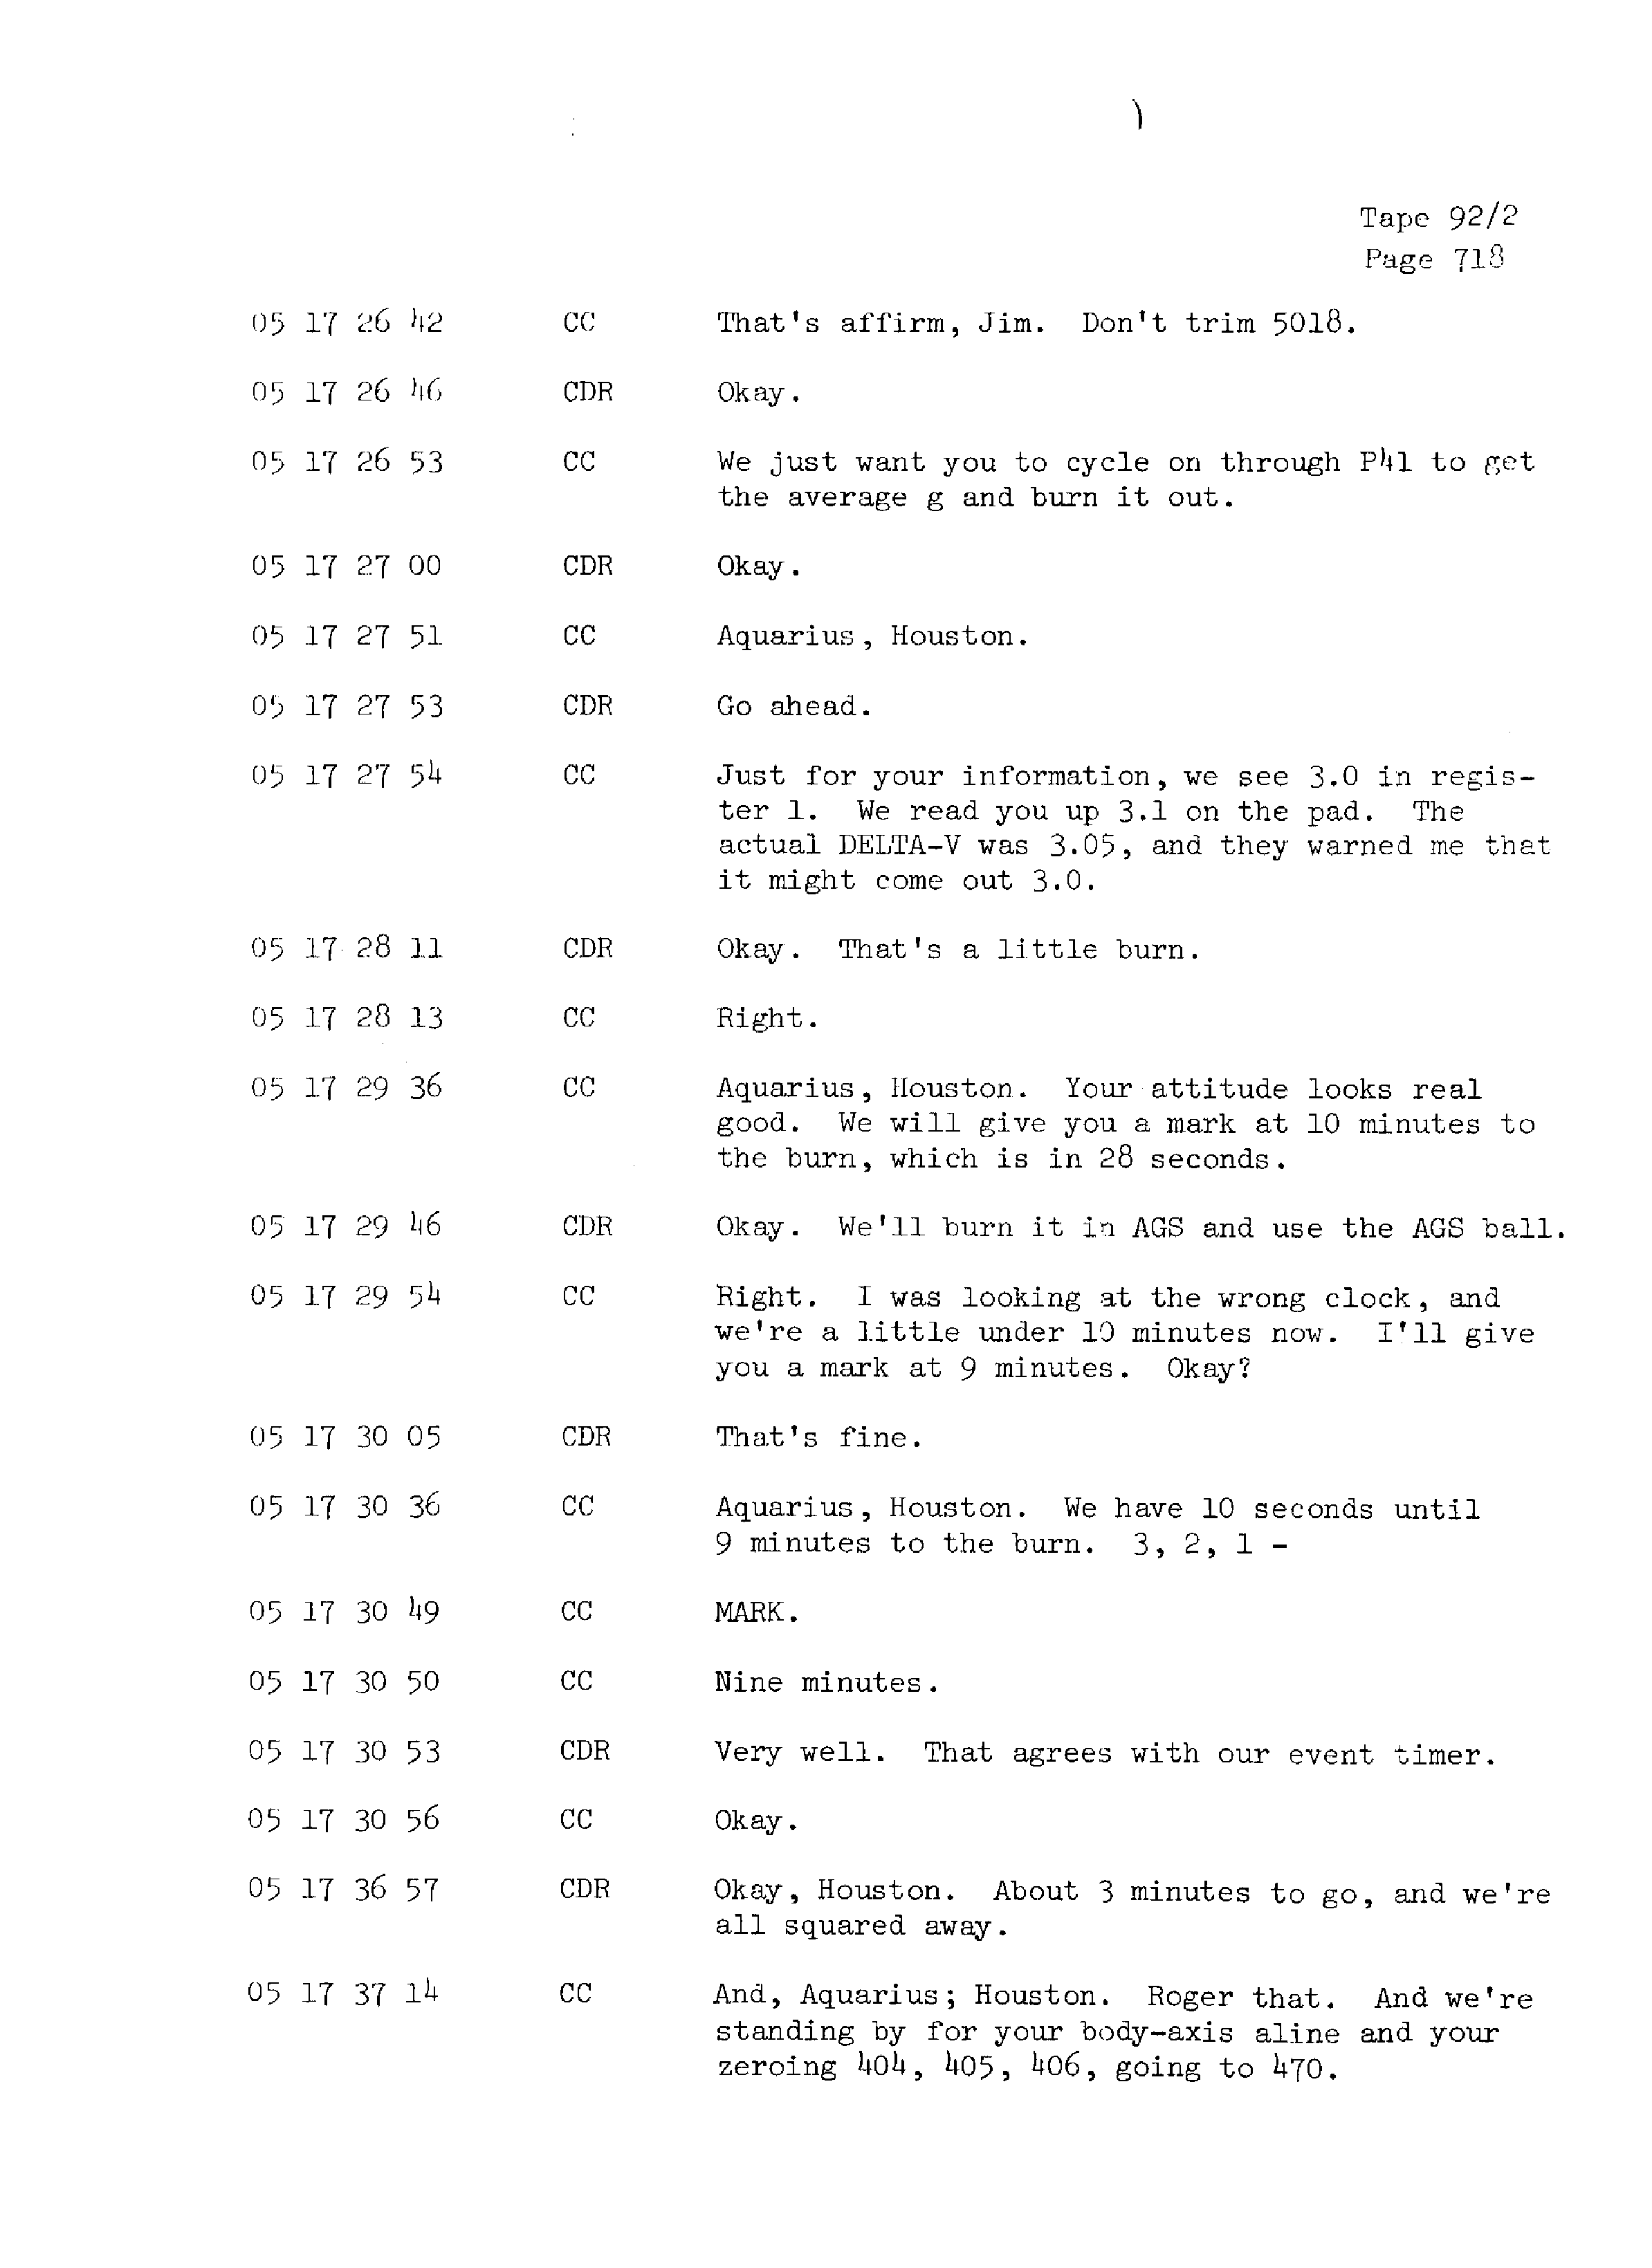 Page 725 of Apollo 13’s original transcript